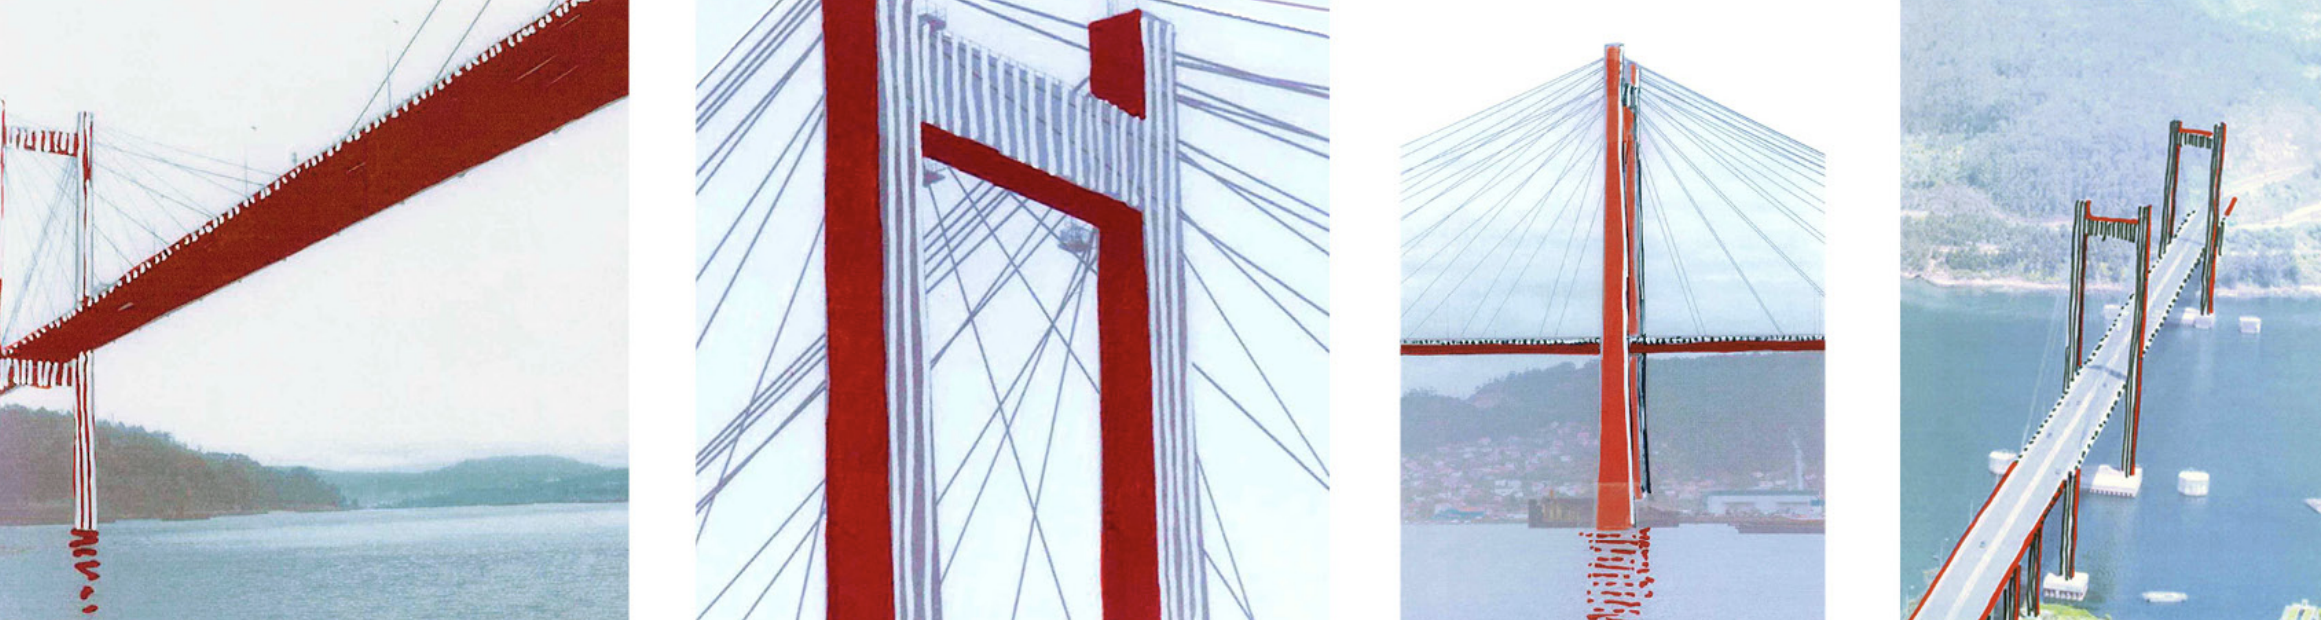 Bosquexo do 'Project pour la Galice', intervención na ponte de Rande do artista francés Daniel Buren